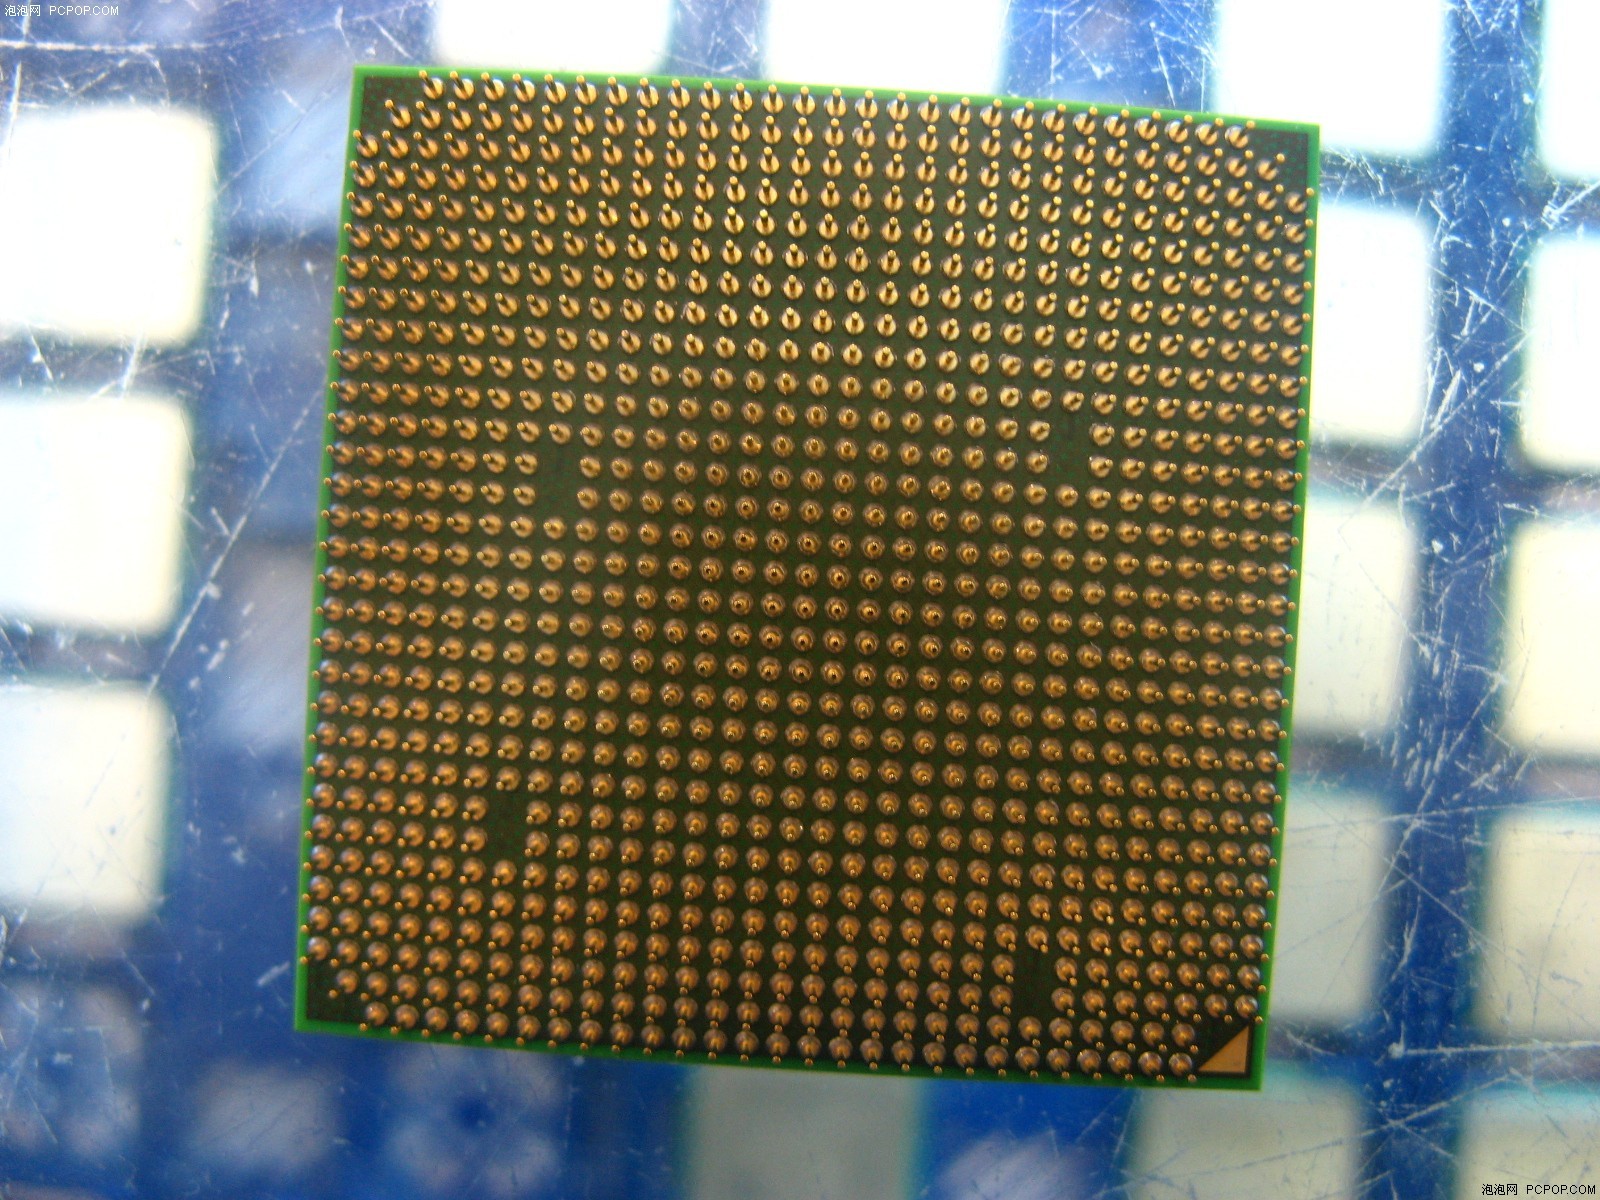 AMD羿龙四核 9150e(散) CPU原图 高清图片 羿